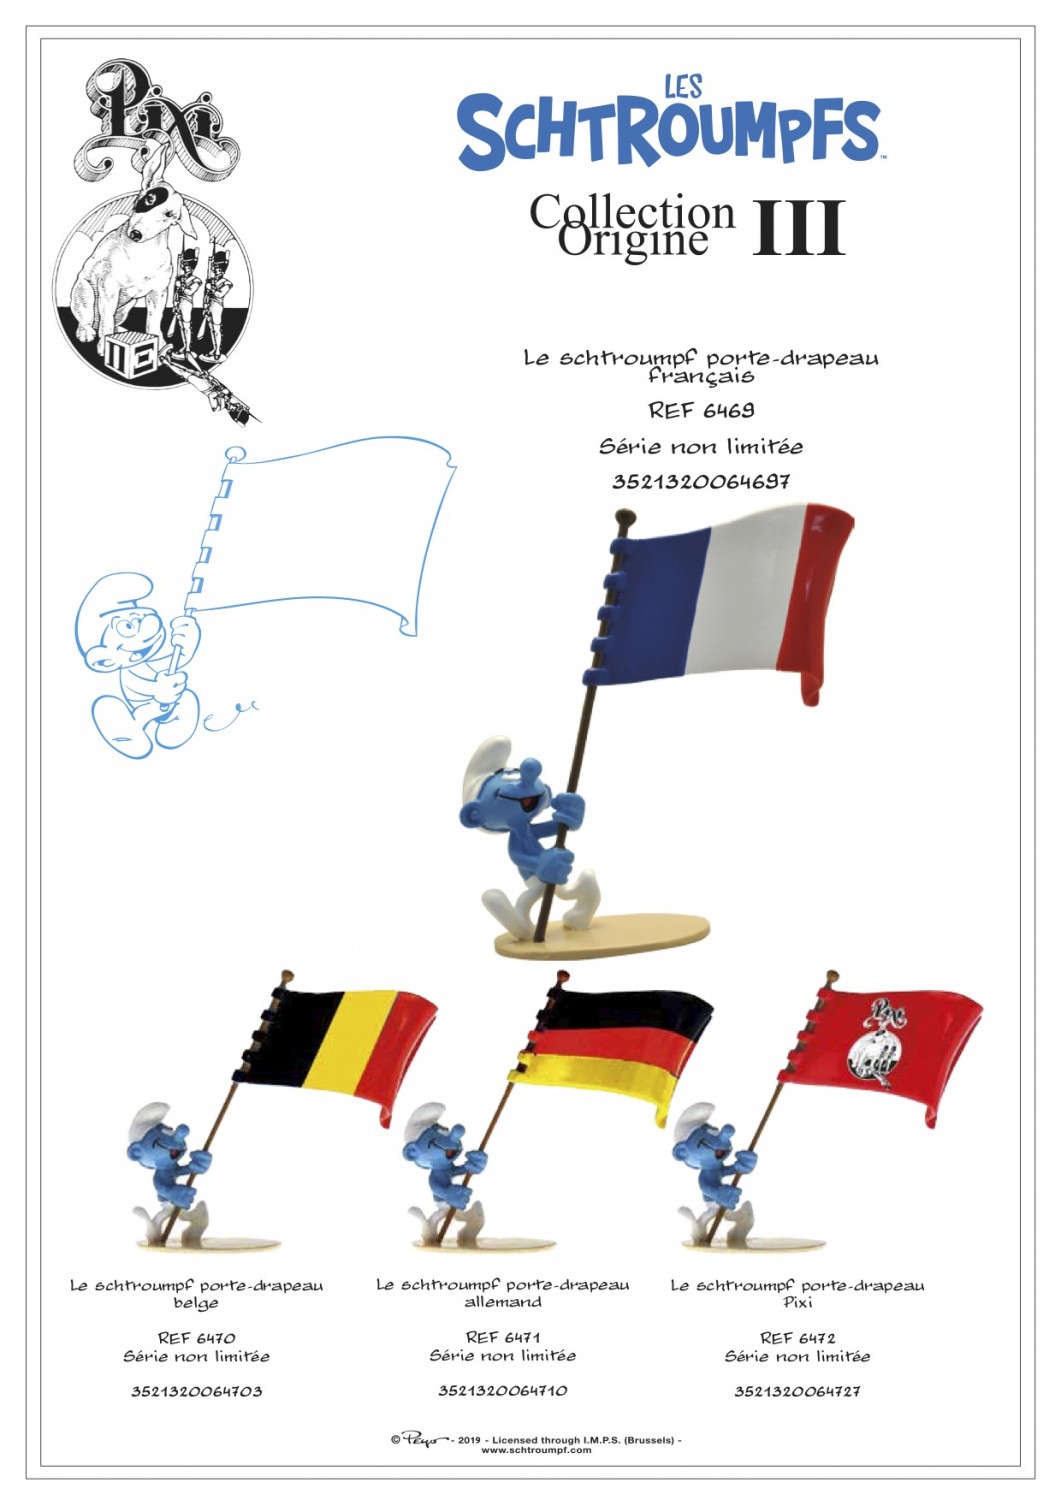 Le Schtroumpf porte-drapeau belge